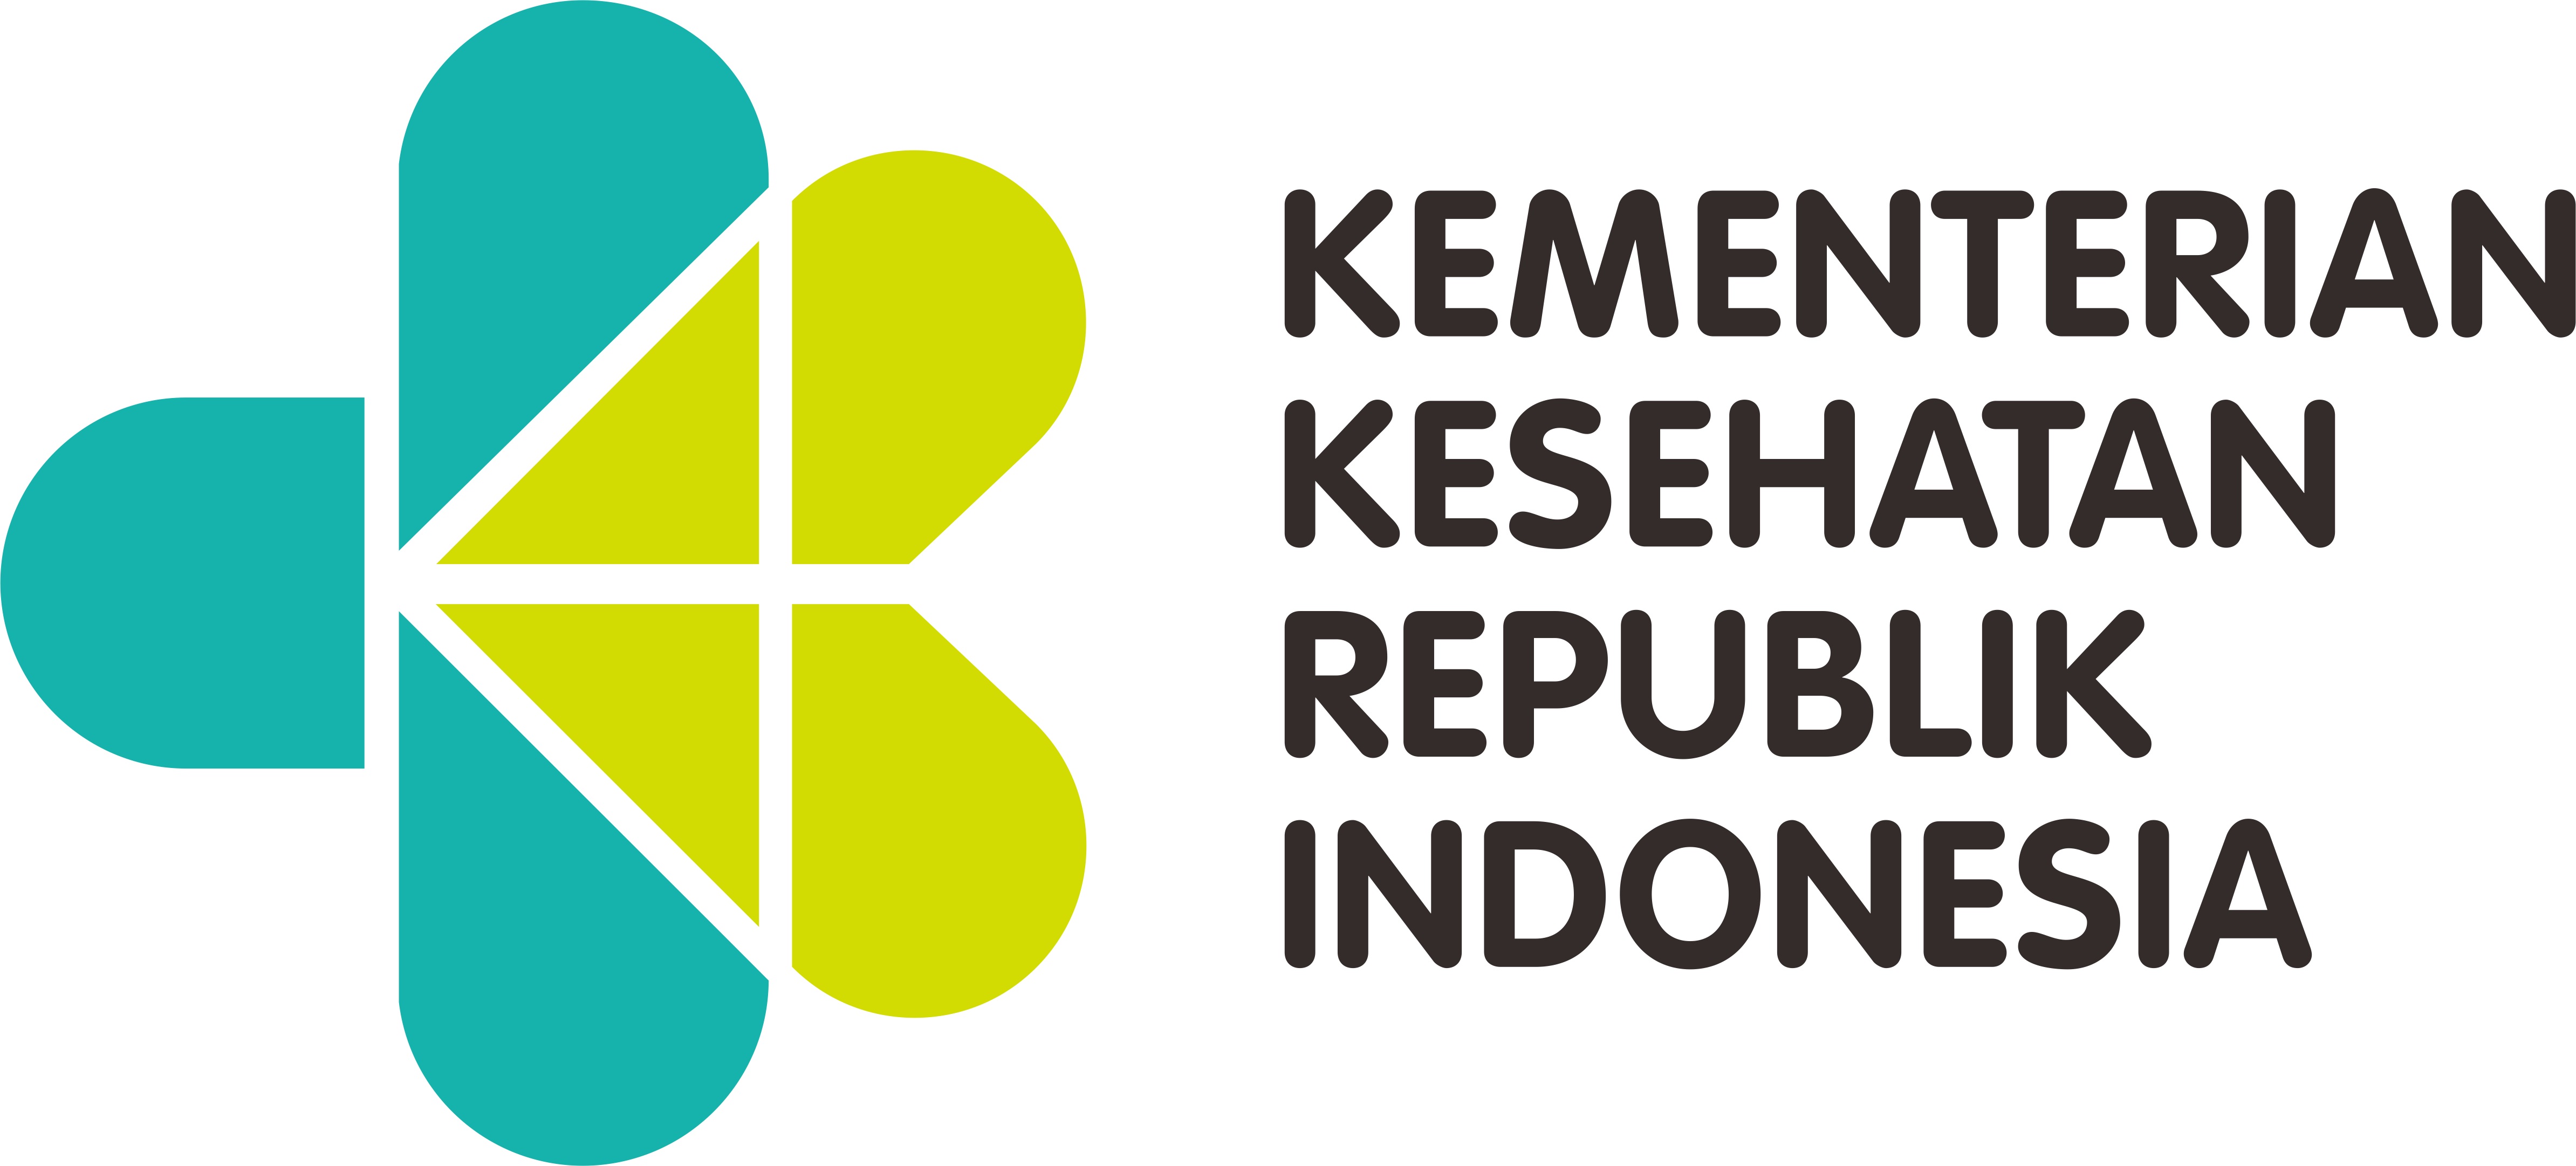 Gambar Logo Kementerian Kesehatan Terbaru